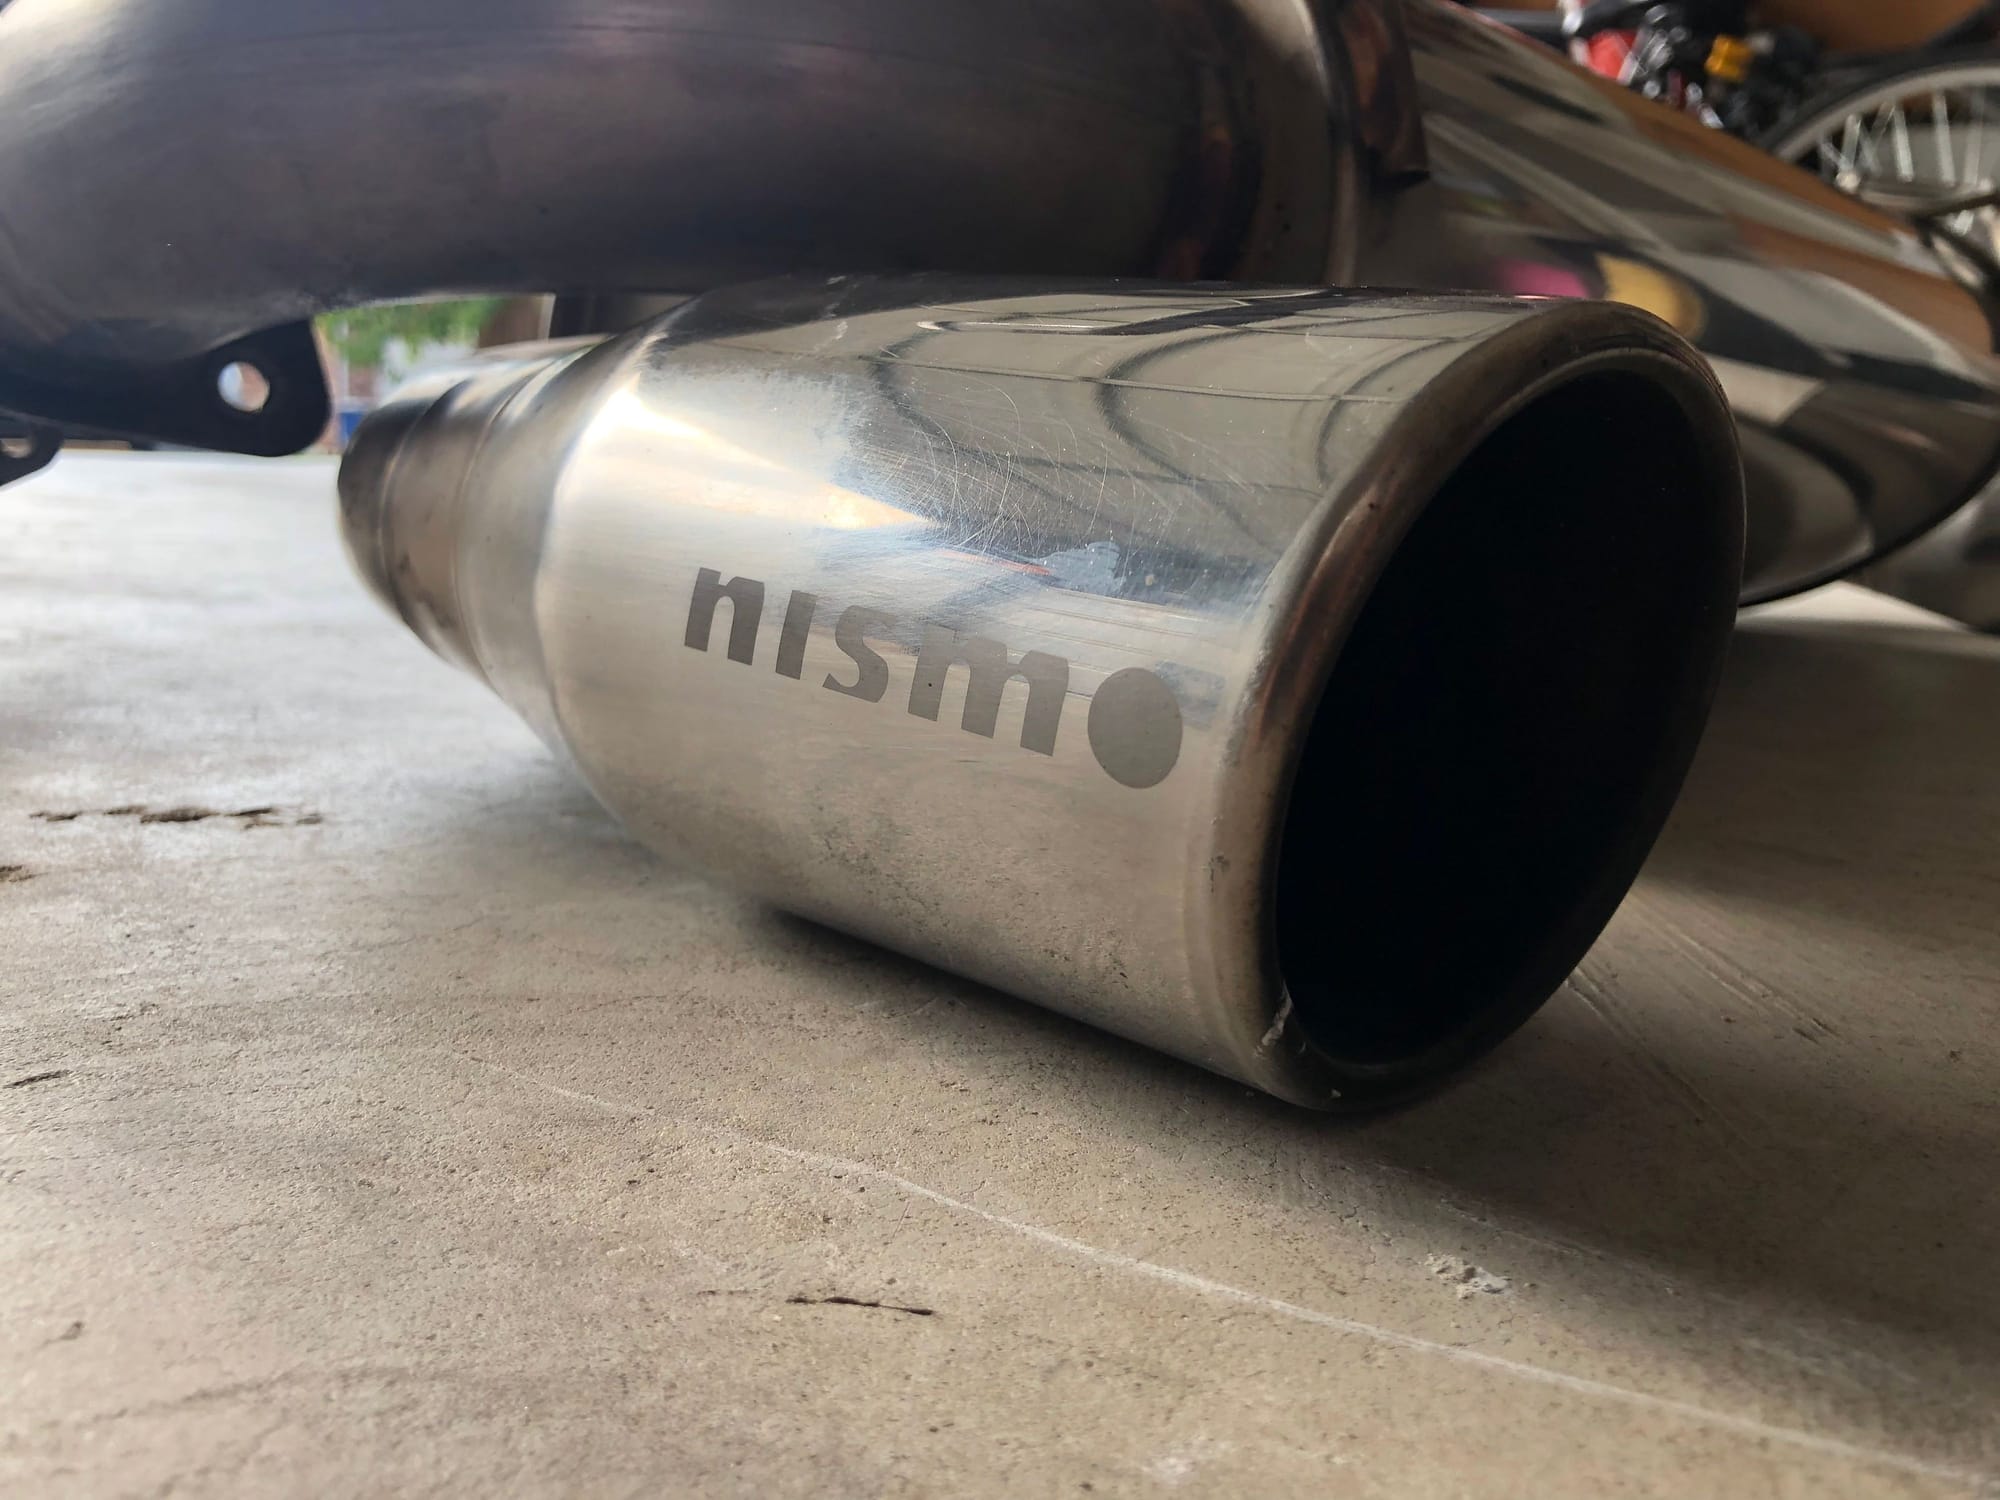 [FS]: OEM 350z Nismo Exhaust for sale (Dallas, TX) - MY350Z.COM